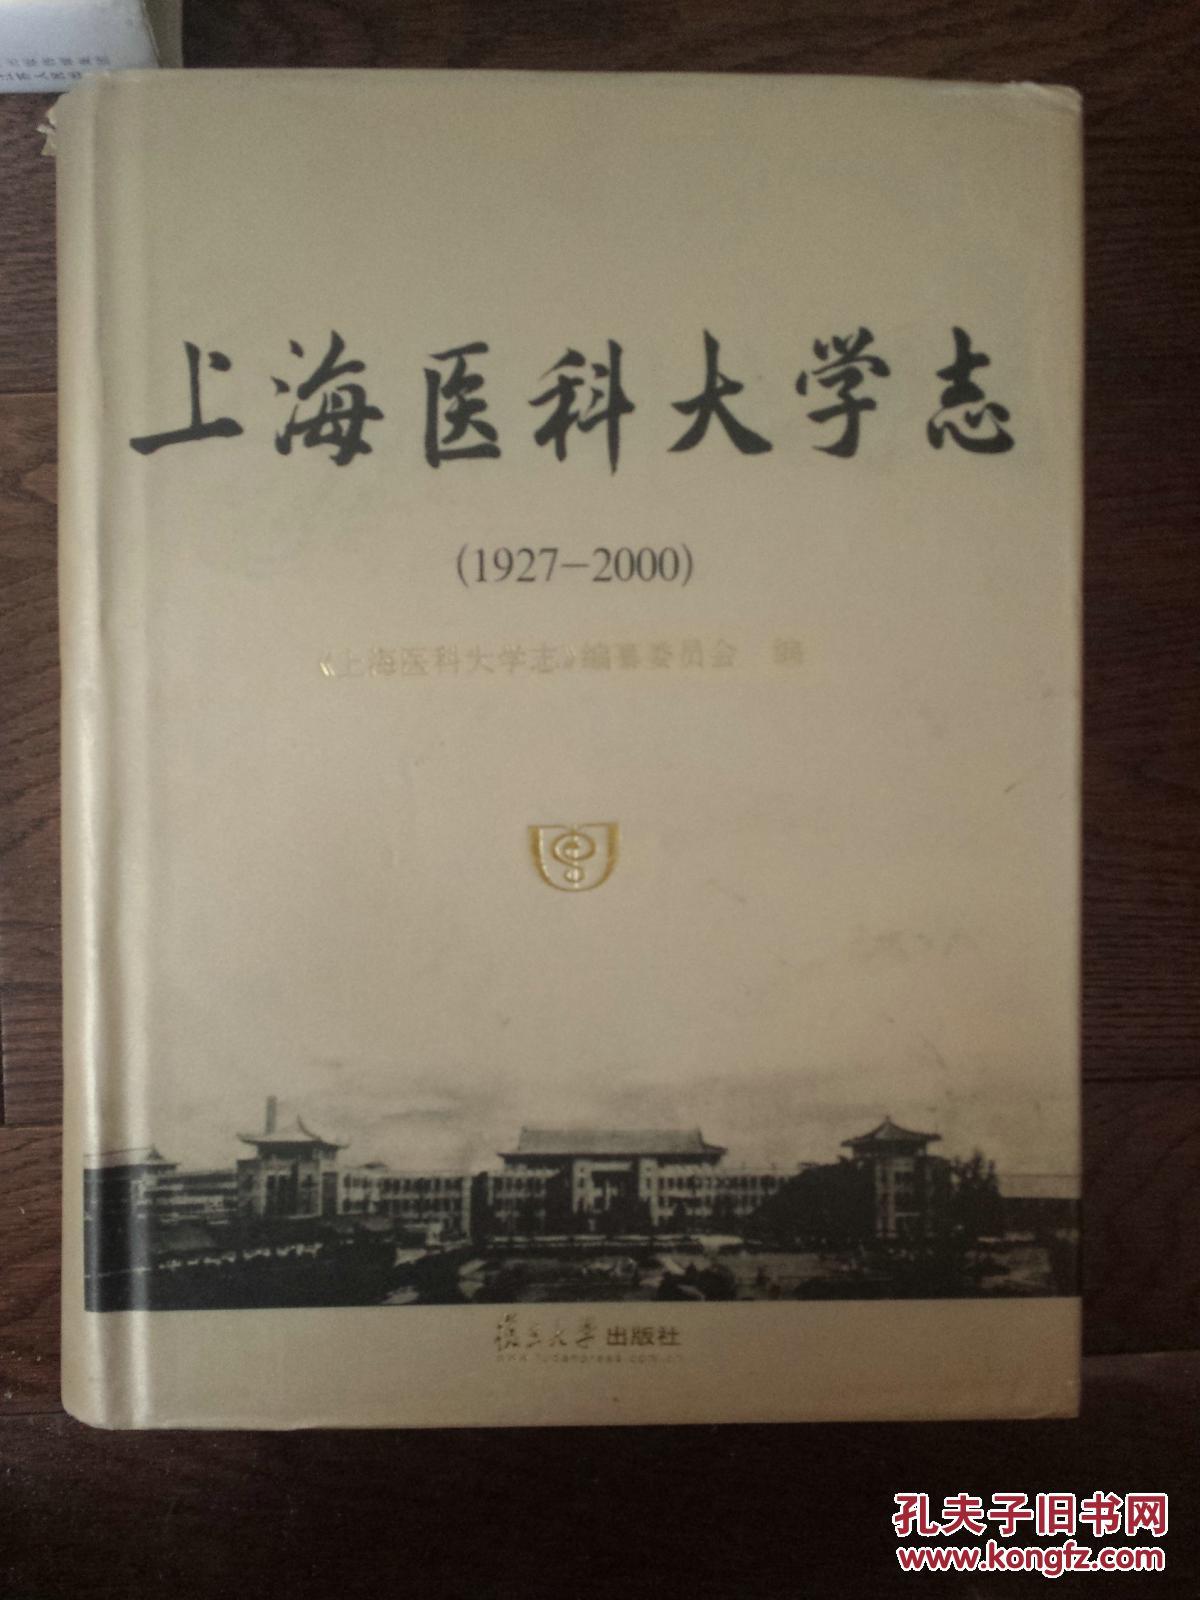 上海医科大学志、上海医科大学图志（两册合售）